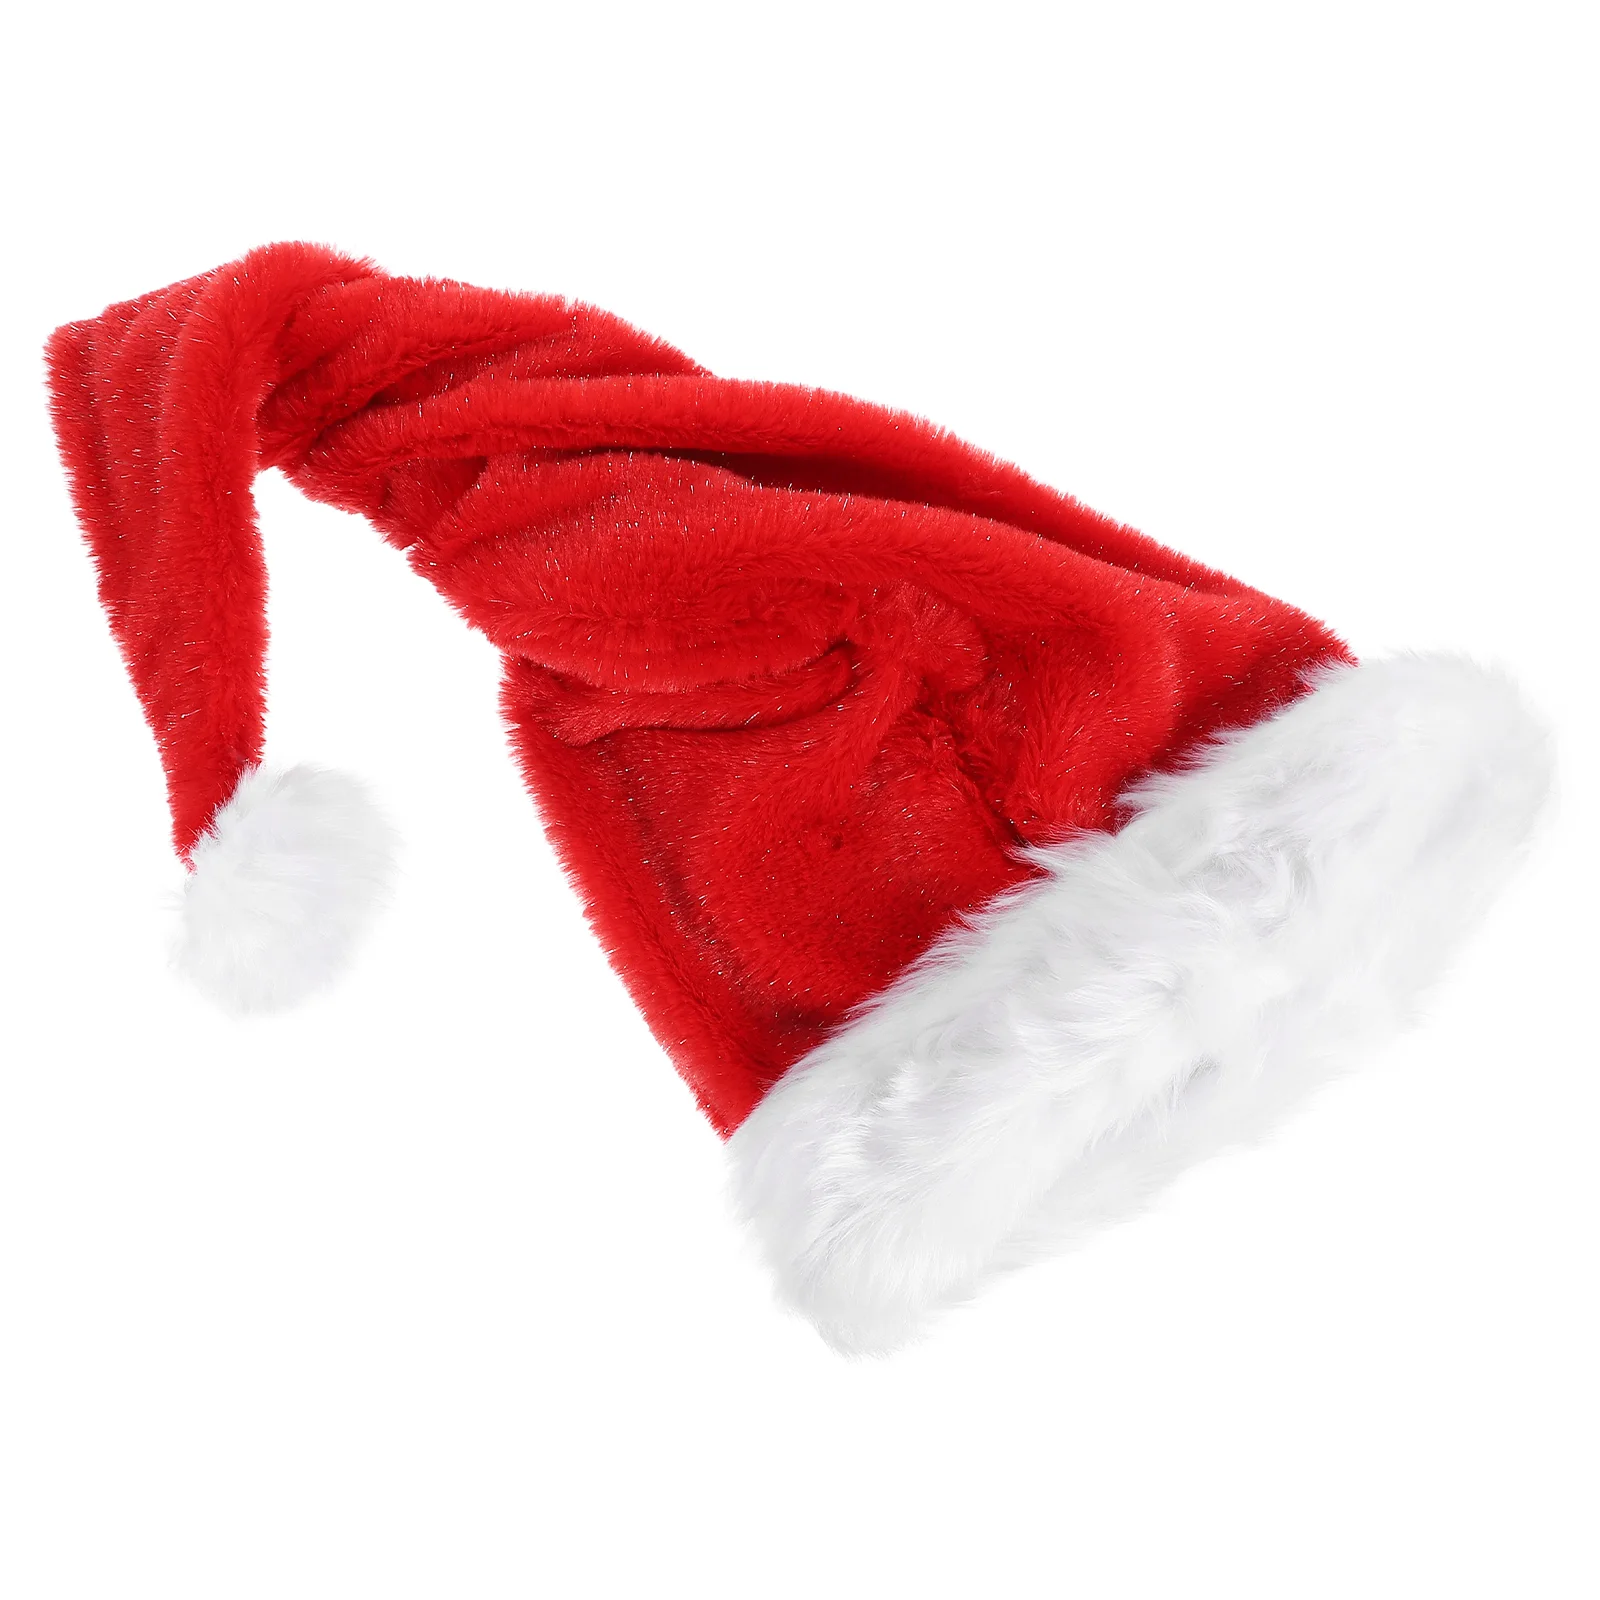 

Головные уборы с Санта Клаусом, Рождественский головной убор, украшения на выбор, Рождественский головной убор унисекс для женщин